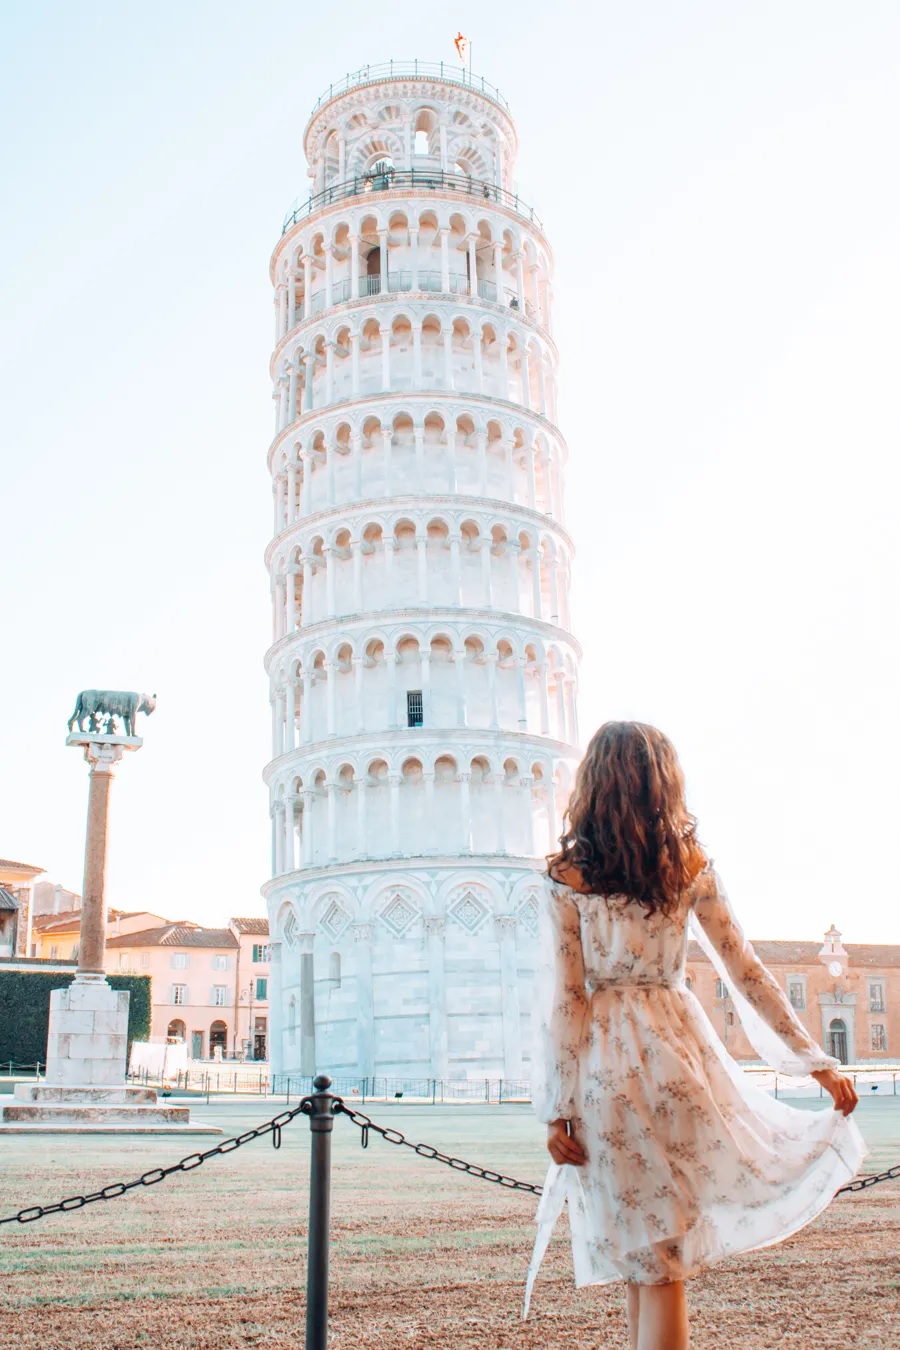 Tháp nghiêng Pisa - địa điểm lịch sử ở Ý